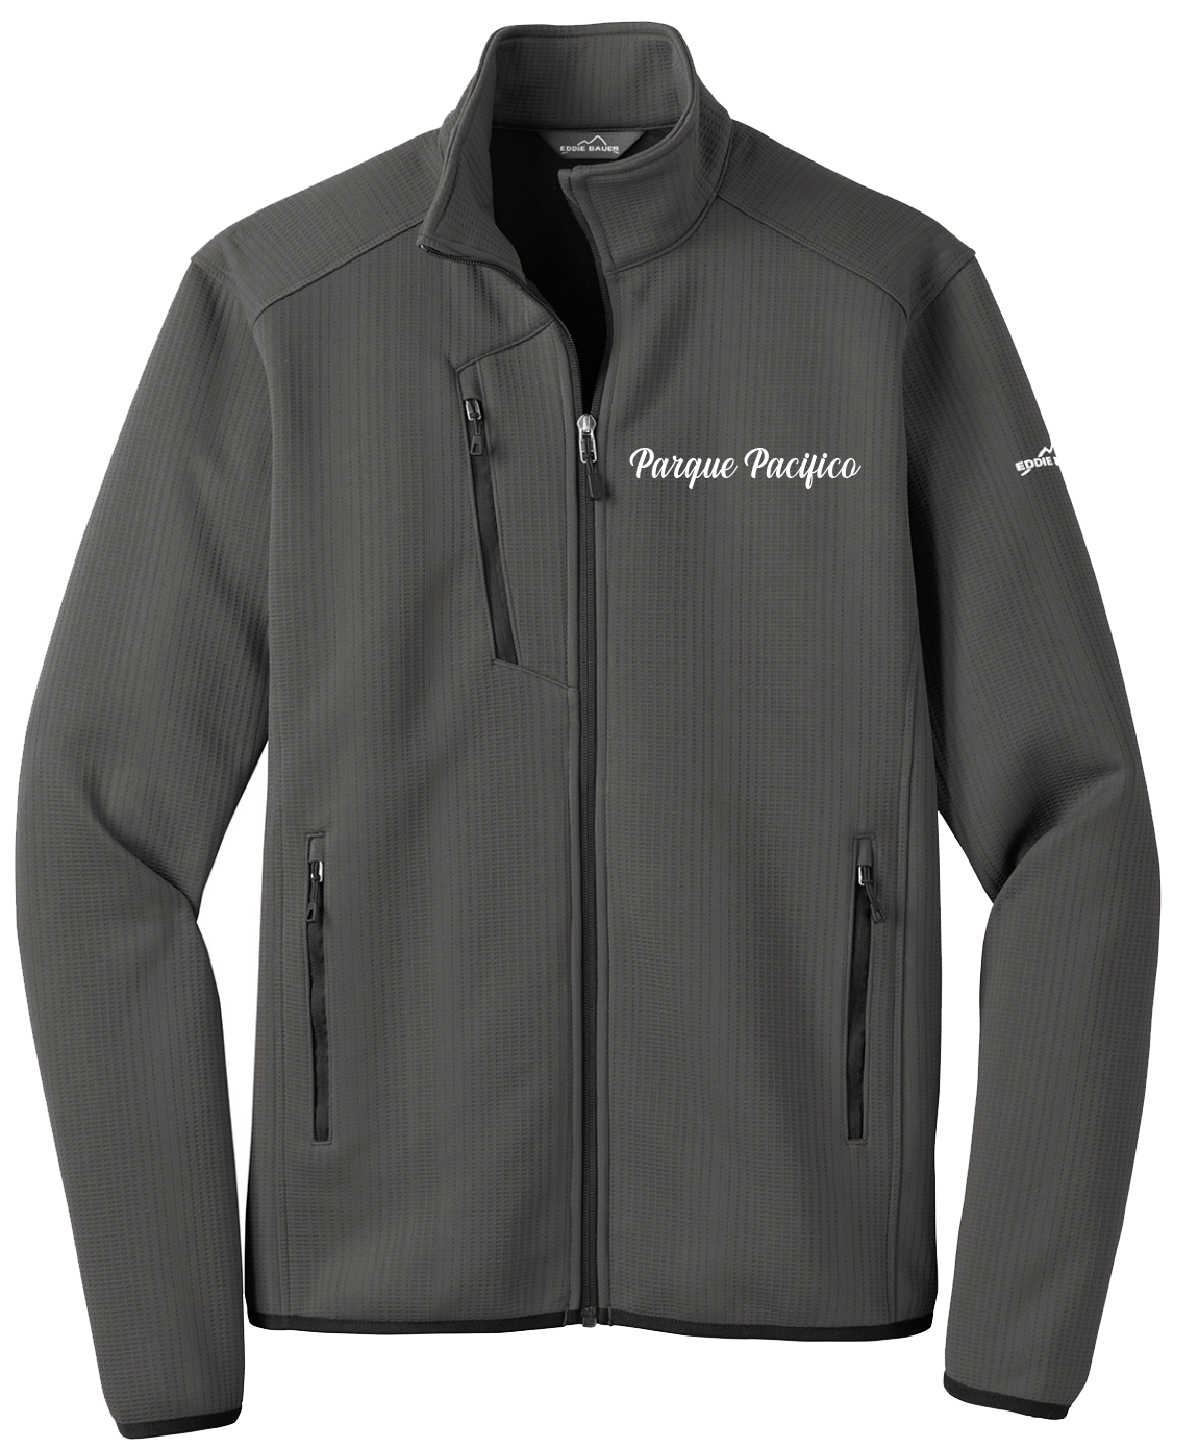 Parque Pacifico - Mens - Eddie Bauer ® Dash Full-Zip Fleece Jacket